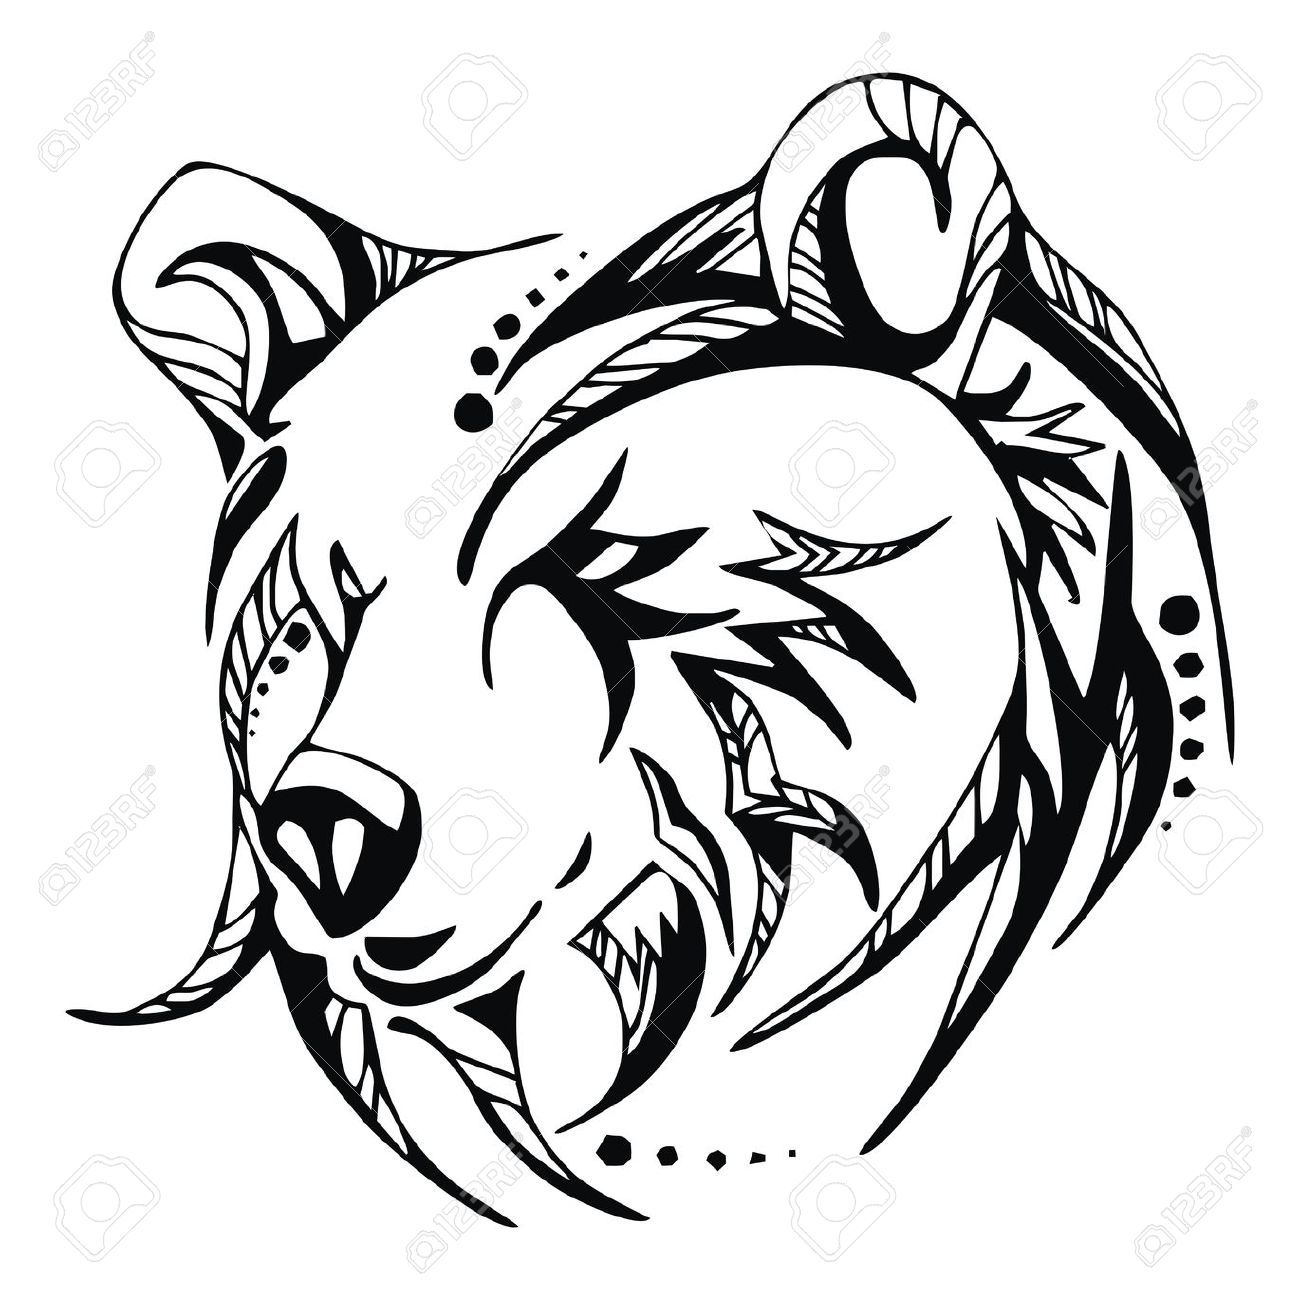 Татуировки медведь: значение и 101 фото и эскизов